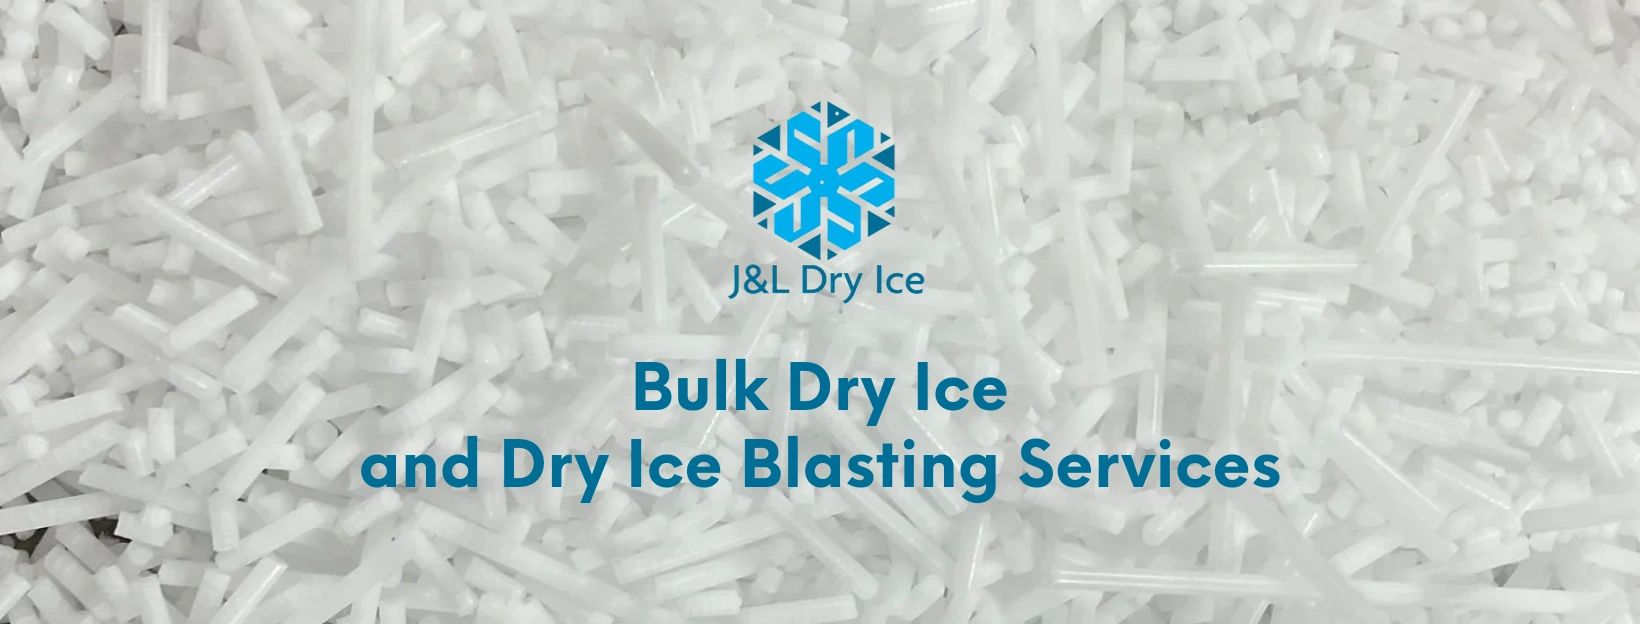 Dry Ice Blasting Services